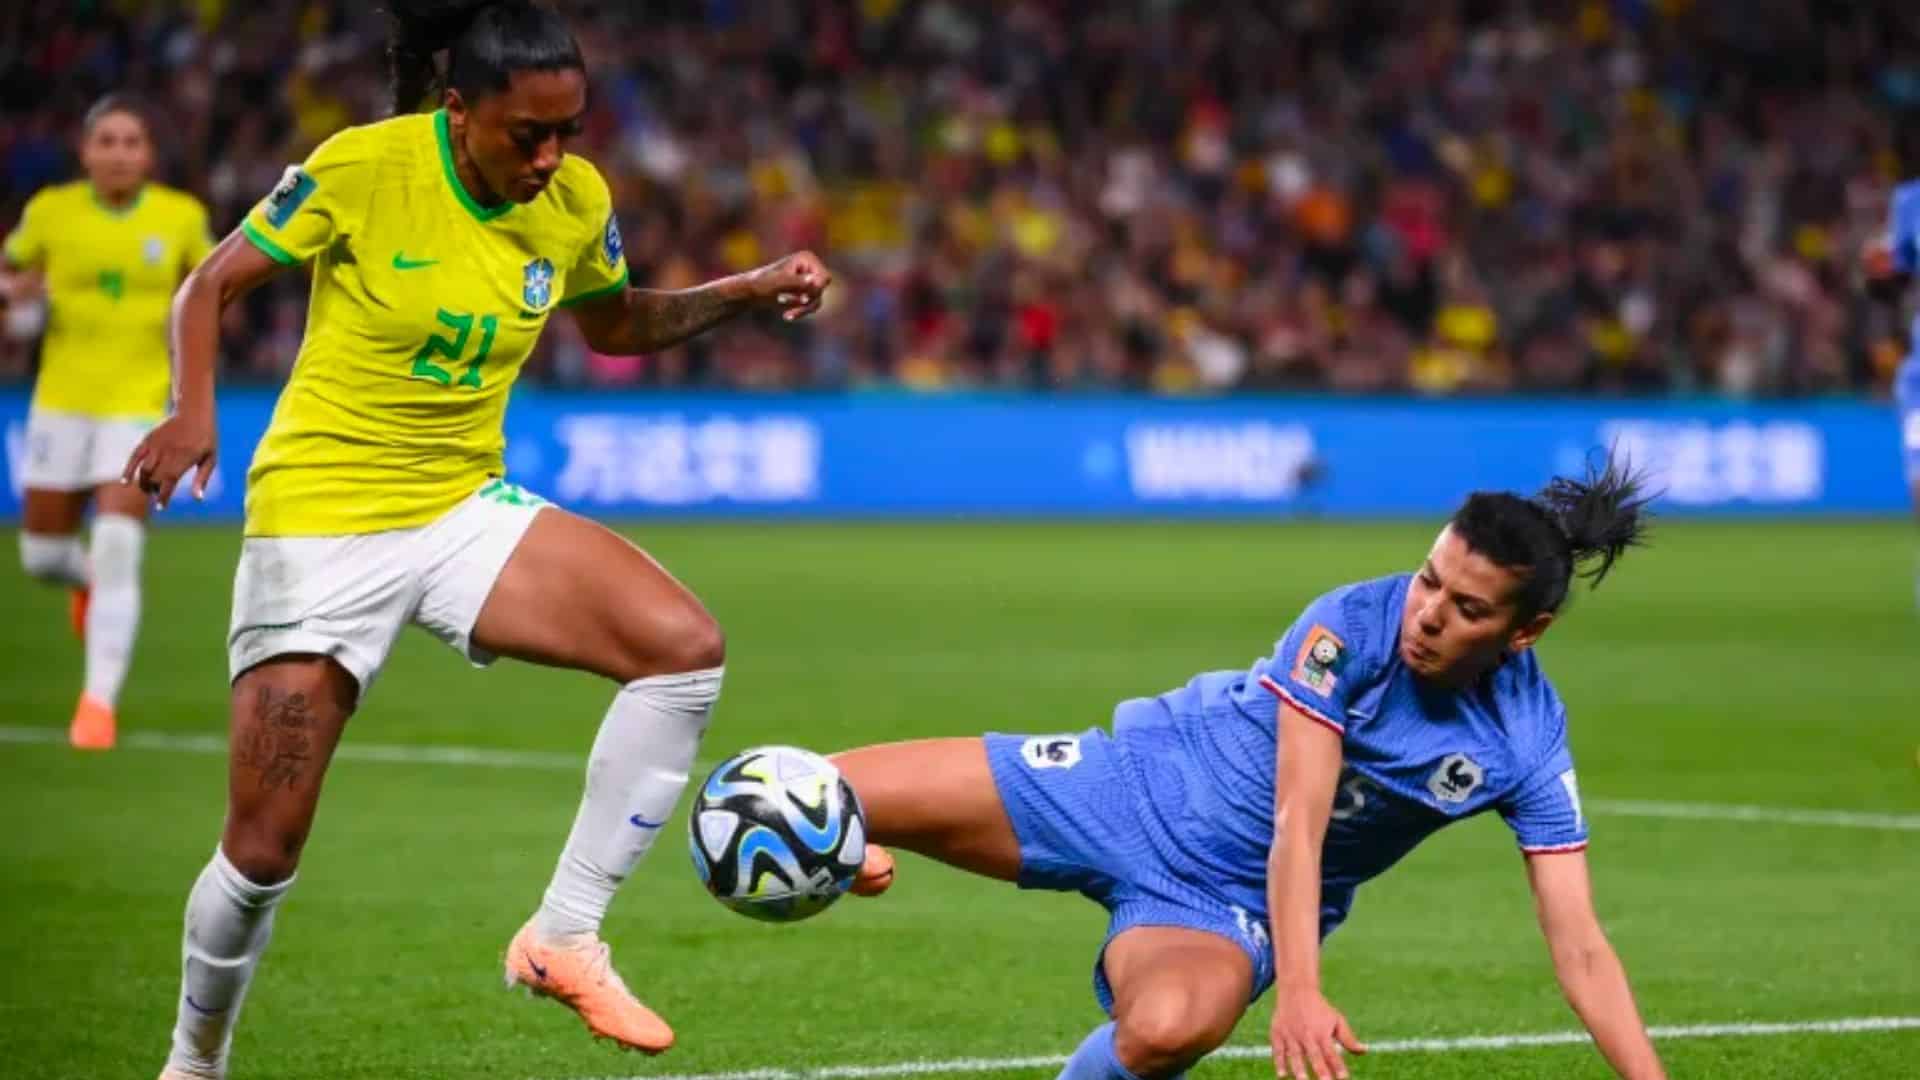 O Brasil foi derrotado por 2 a 1 pela França e agora depende de jogo contra a Jamaica para avançar na Copa do Mundo Feminina (Foto: Franck Fife/AFP)